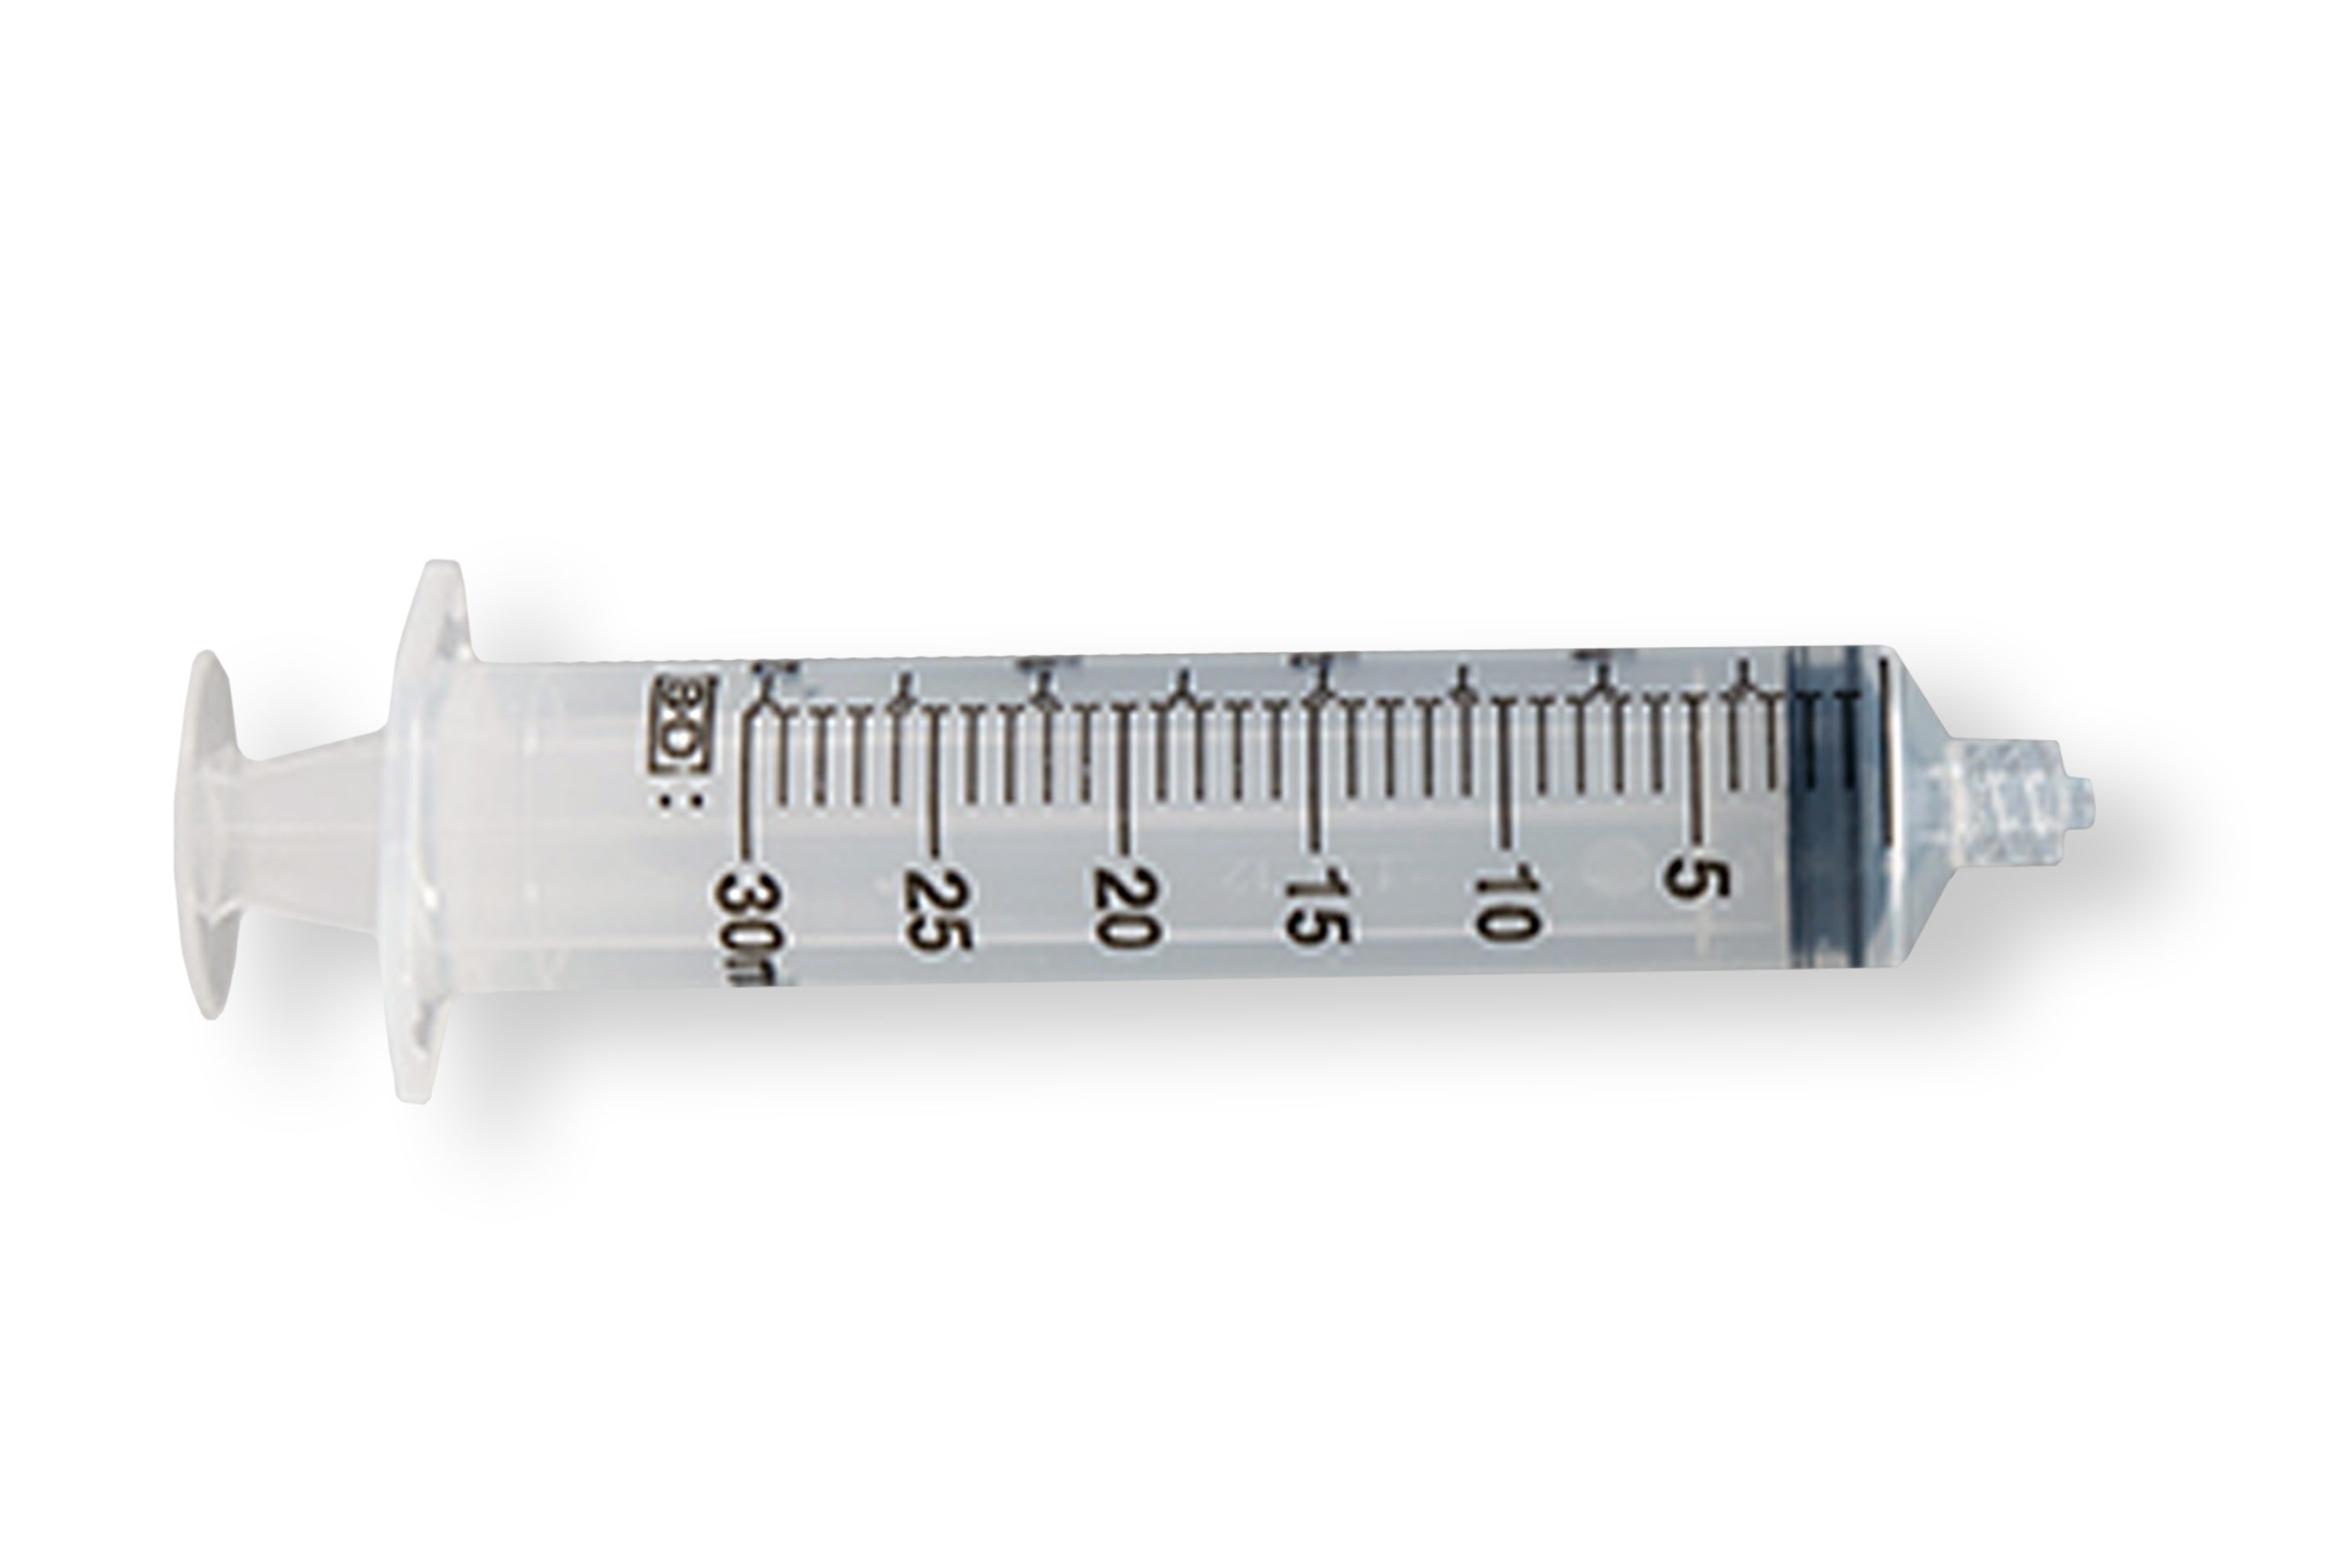 Exel Tuberculin Syringe with Needle, 1cc, Luer Slip, 25g x 5/8 inch, 100/Box